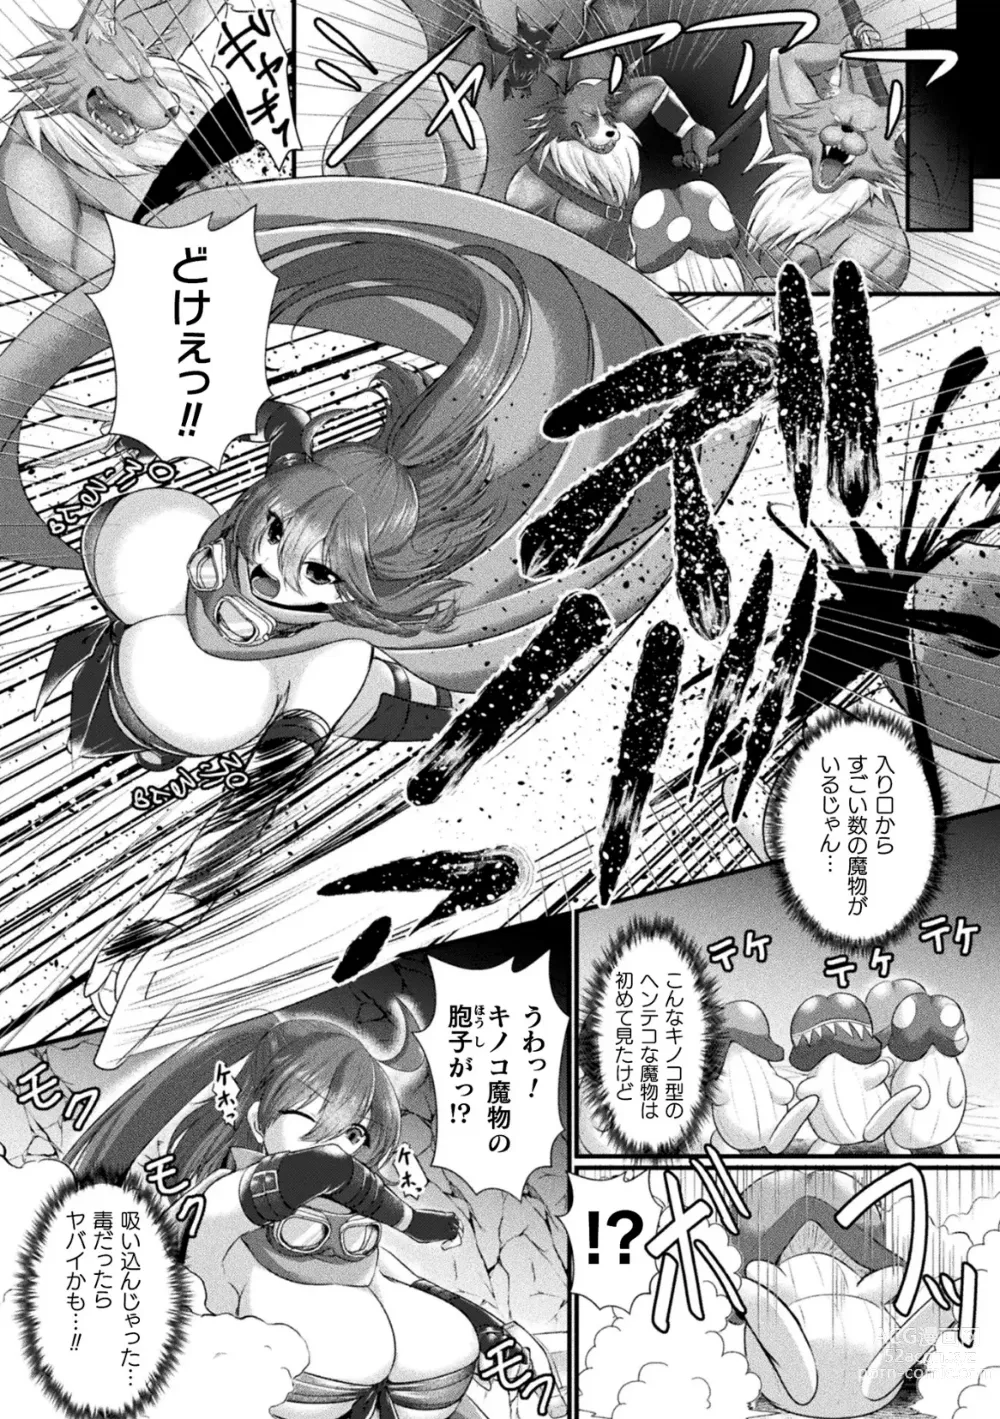 Page 5 of manga 2D Comic Magazine Futanari Kabe Sao Kabe Shiri Futanari Heroine Sakusei Iki Jigoku! Vol. 2